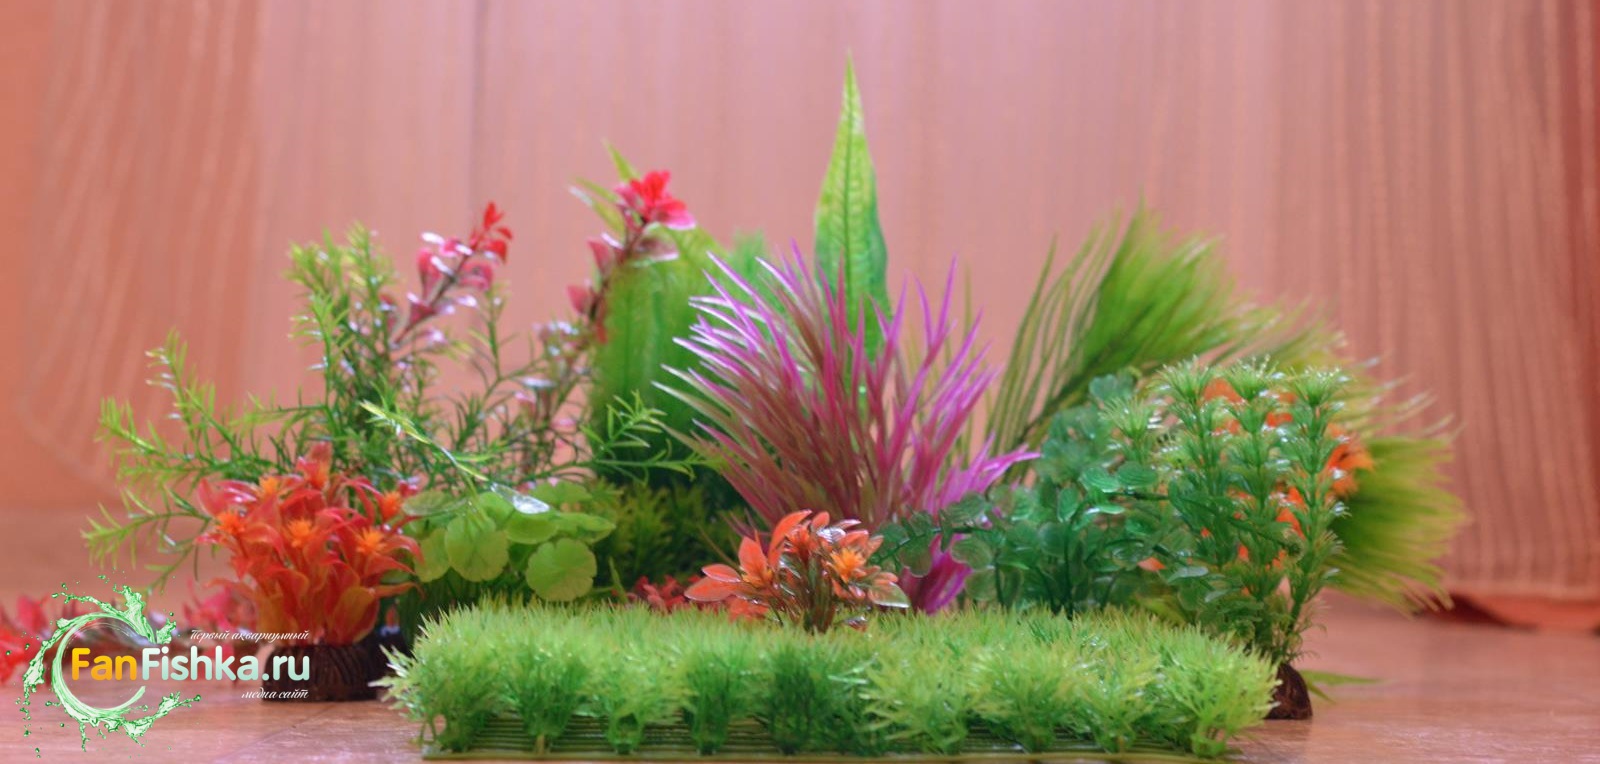 Все об искусственных растениях для аквариума, примеры оформления:  кораллами, корягами, камнями, водорослями